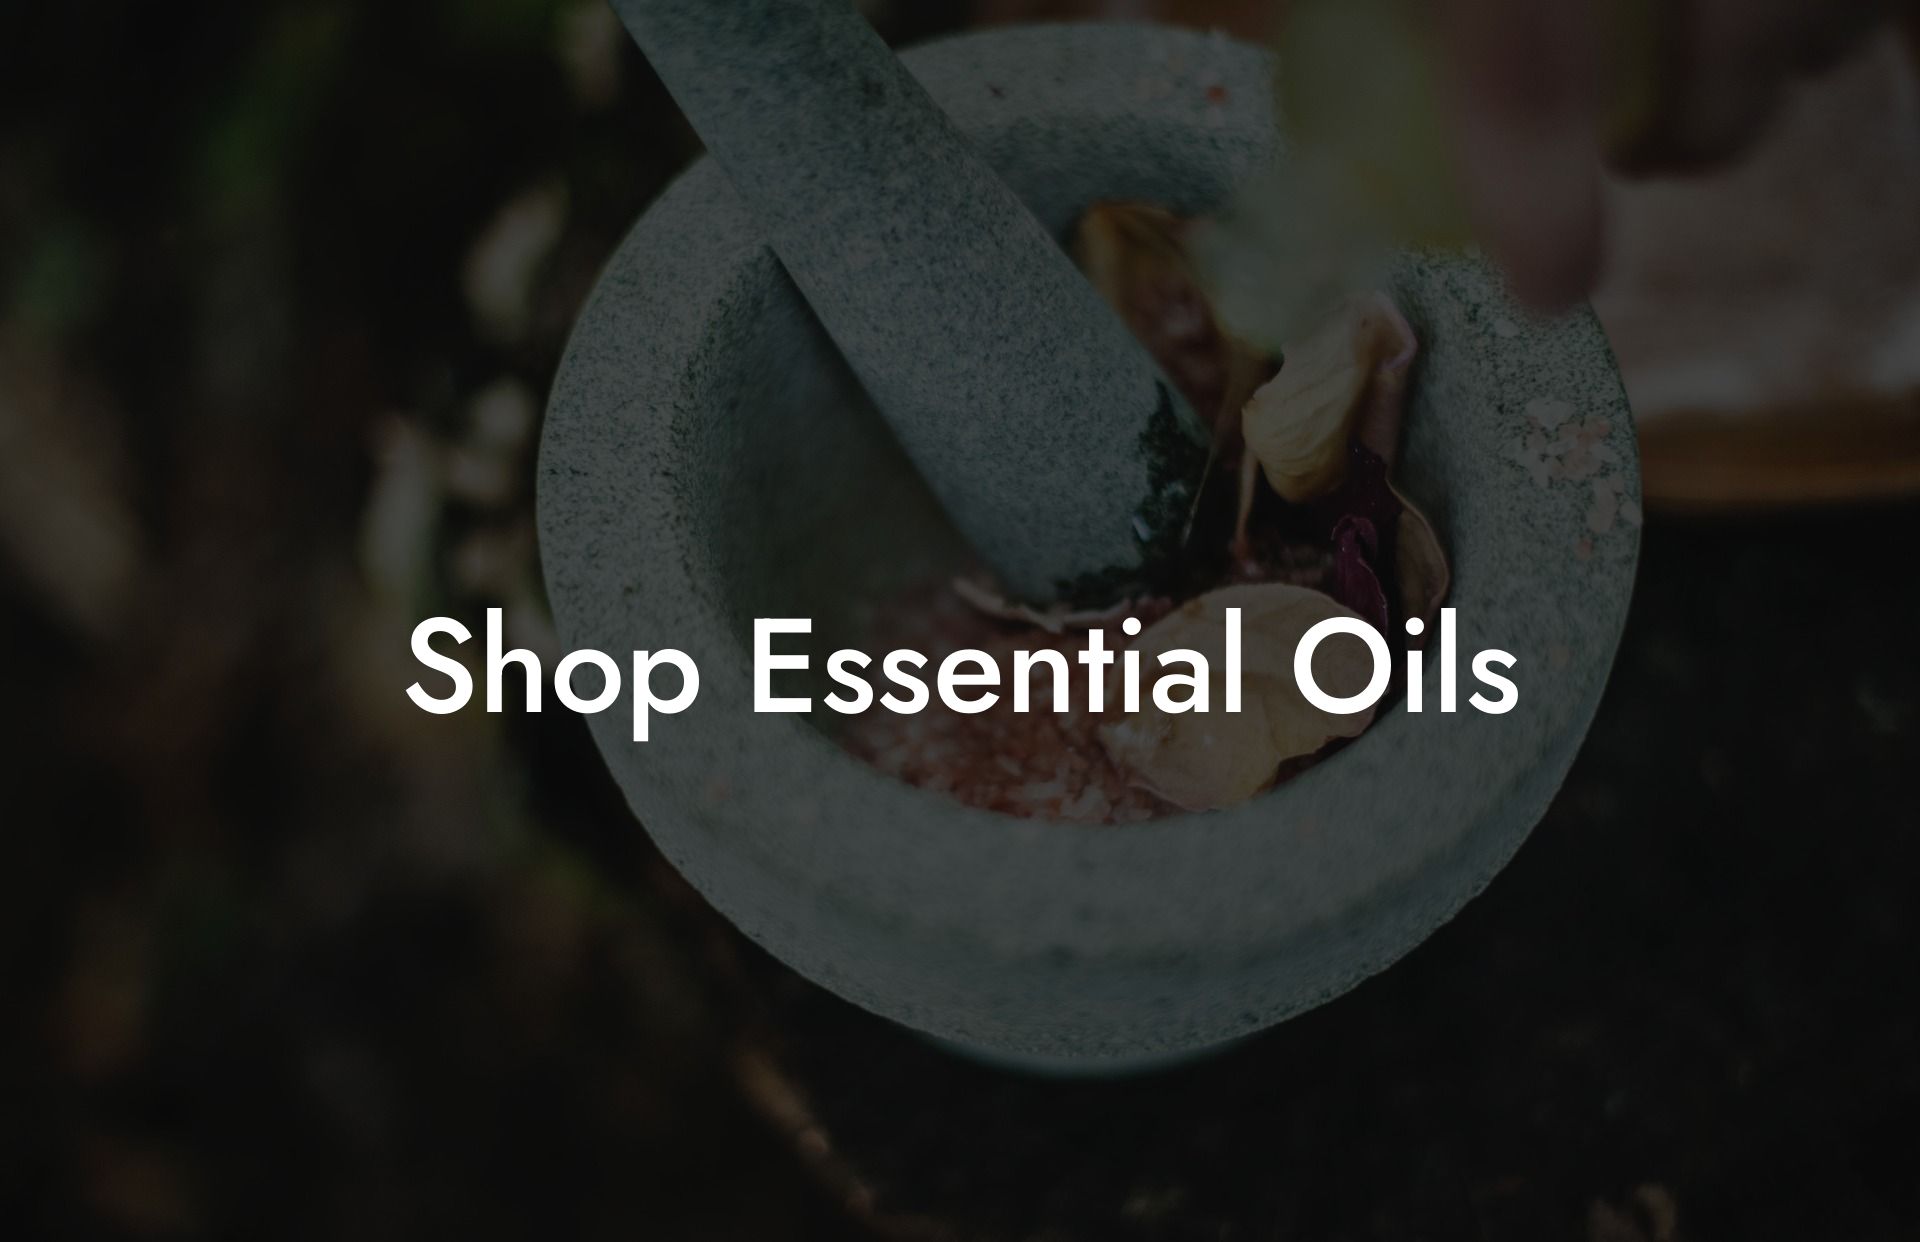 Shop Essential Oils